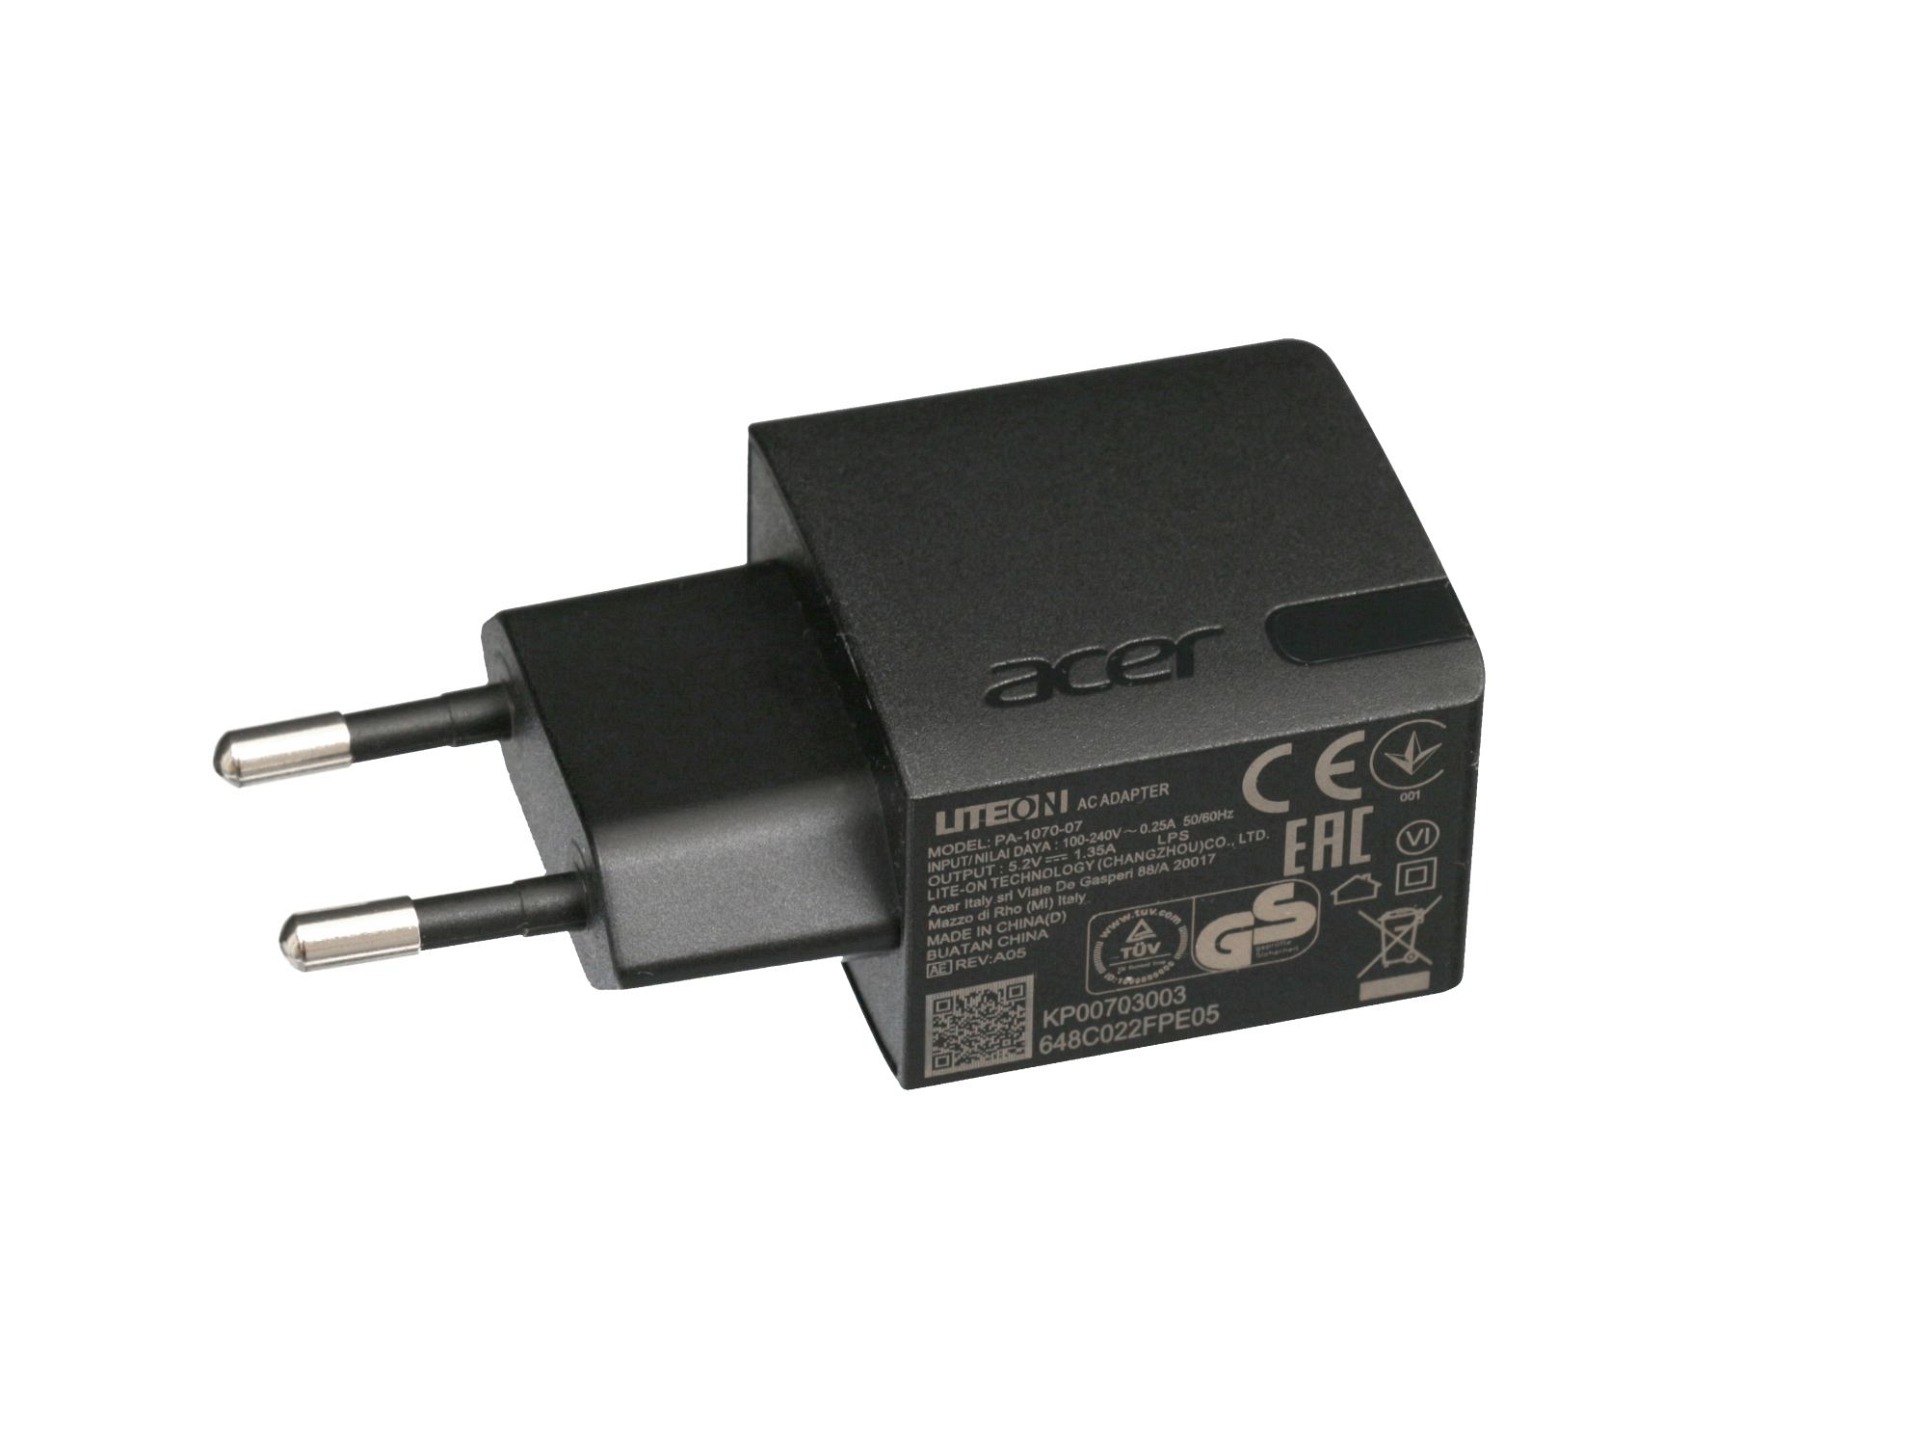 USB Netzteil 7 Watt EU Wallplug für Asus MeMo Pad 7 (ME176CE)